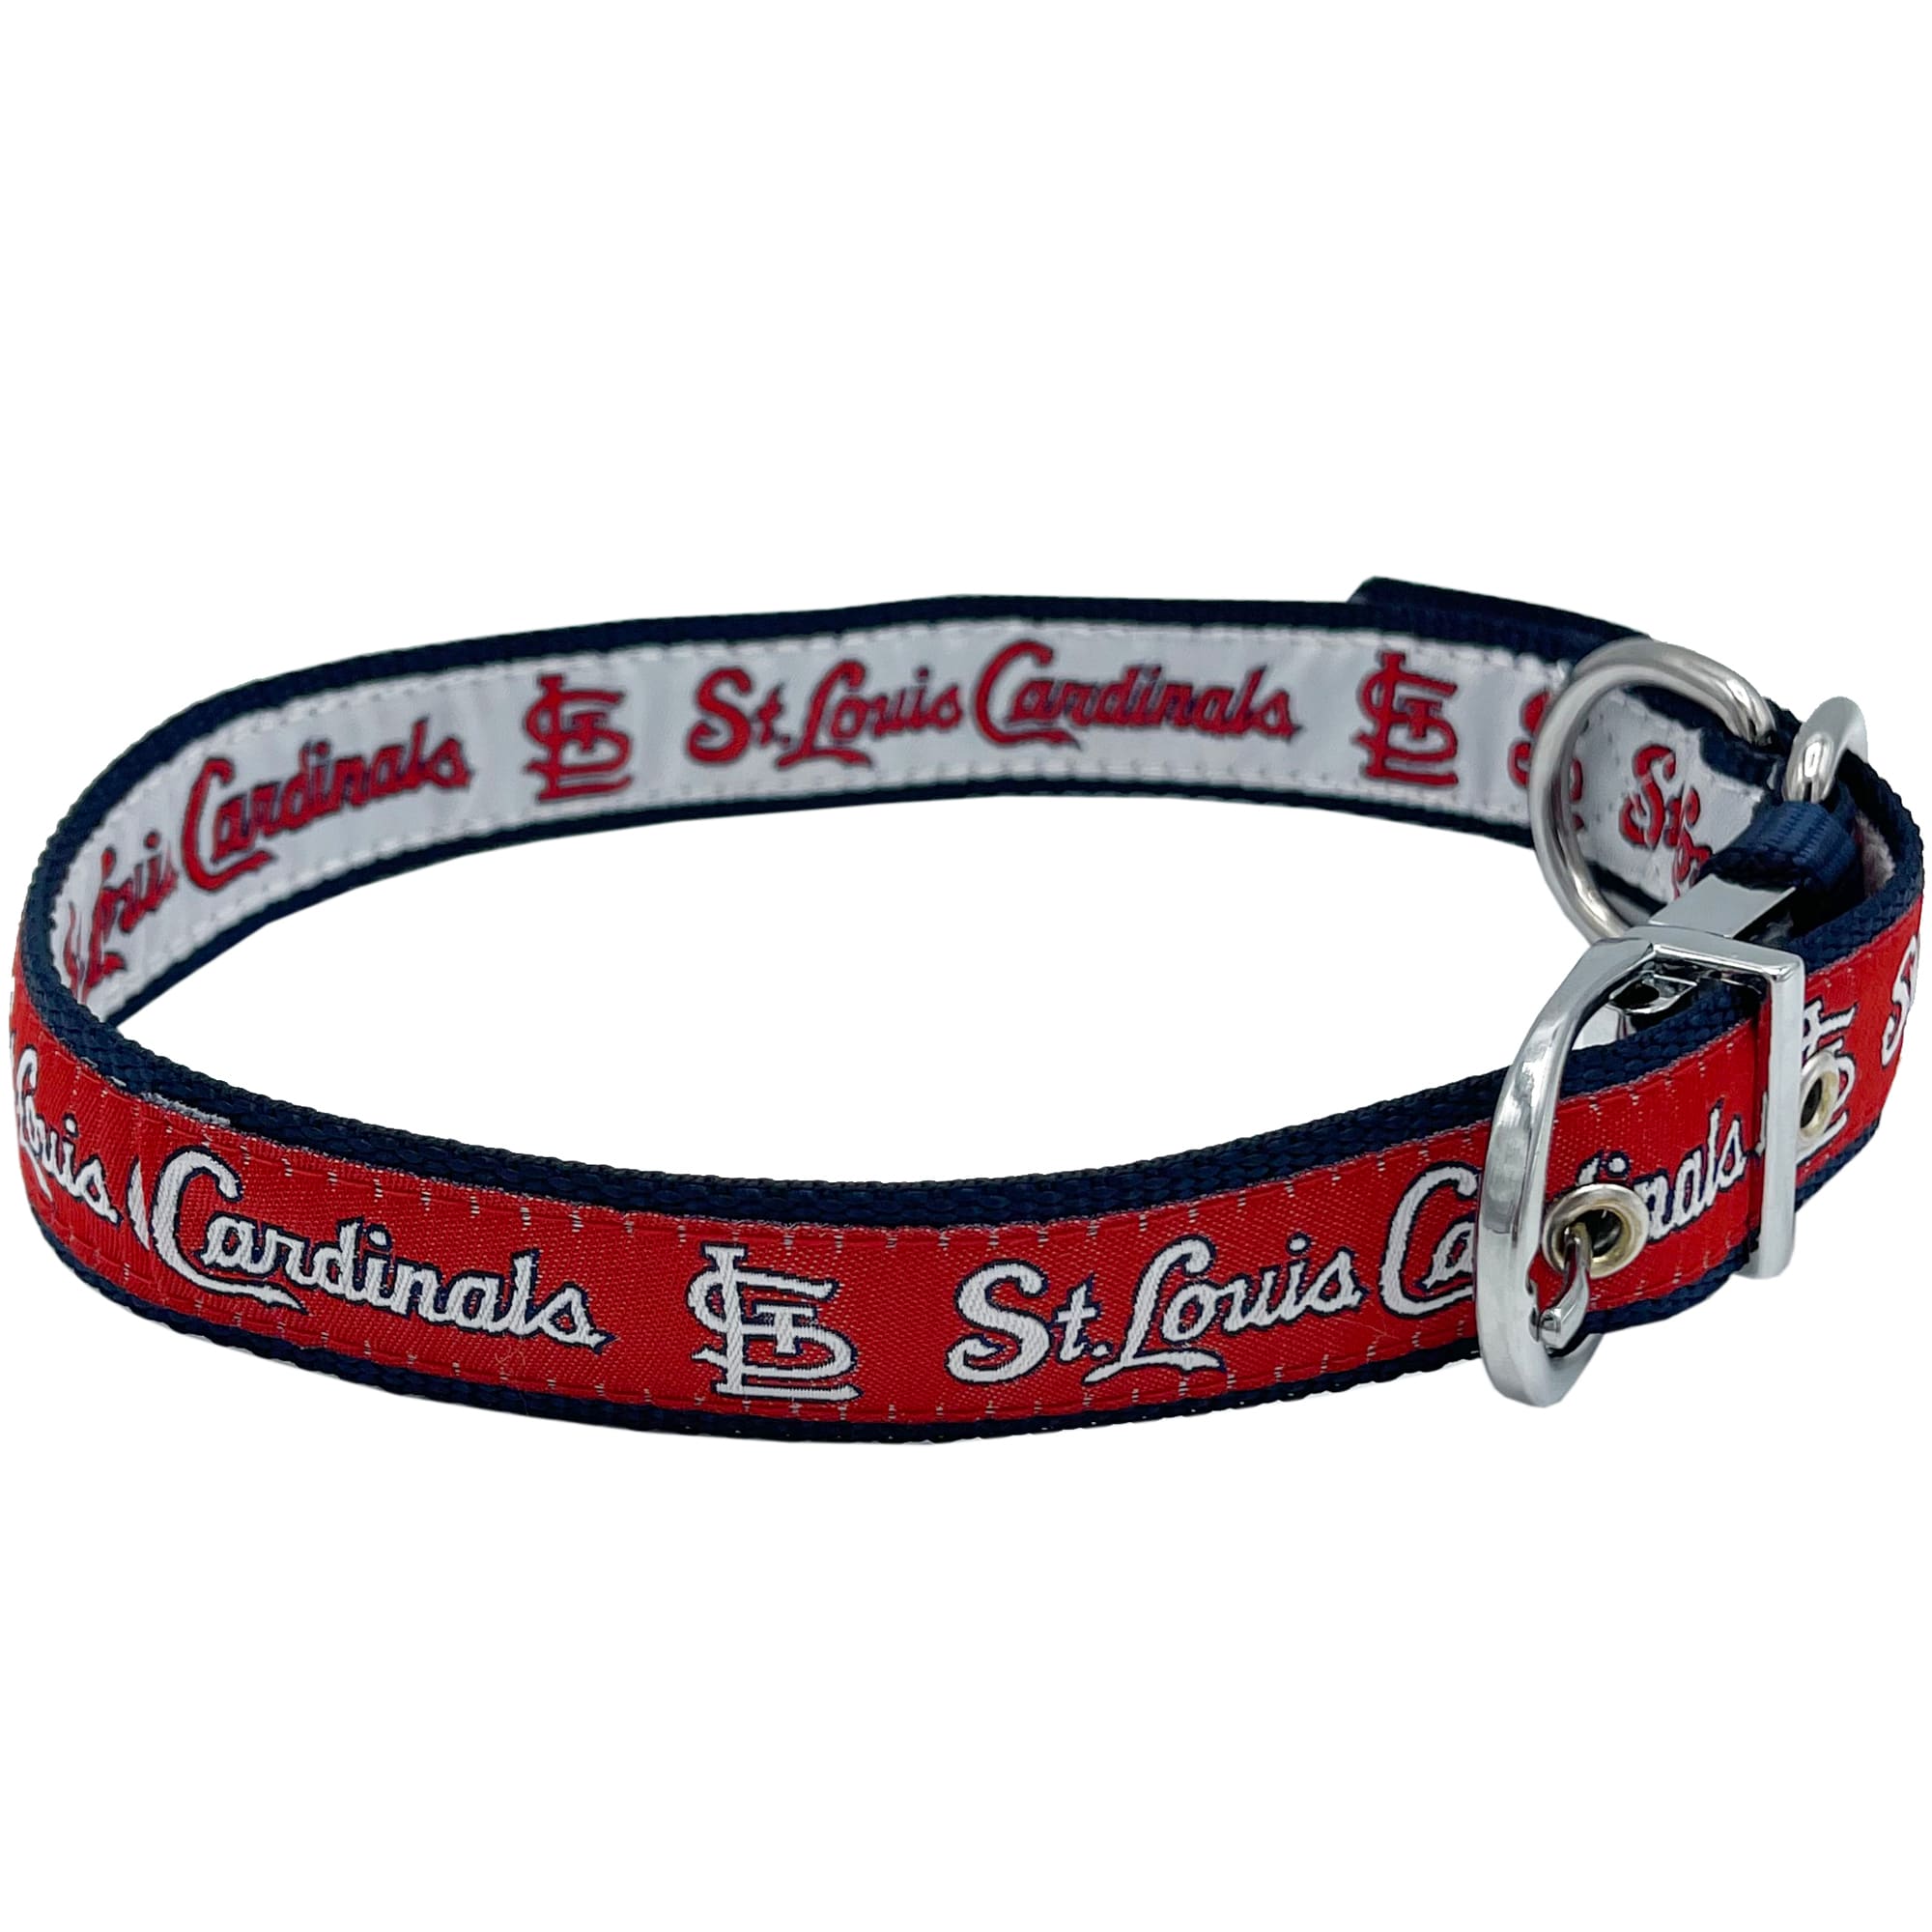 St. Louis Cardinals Dog Collars  St. Louis Cardinals Dog Jerseys